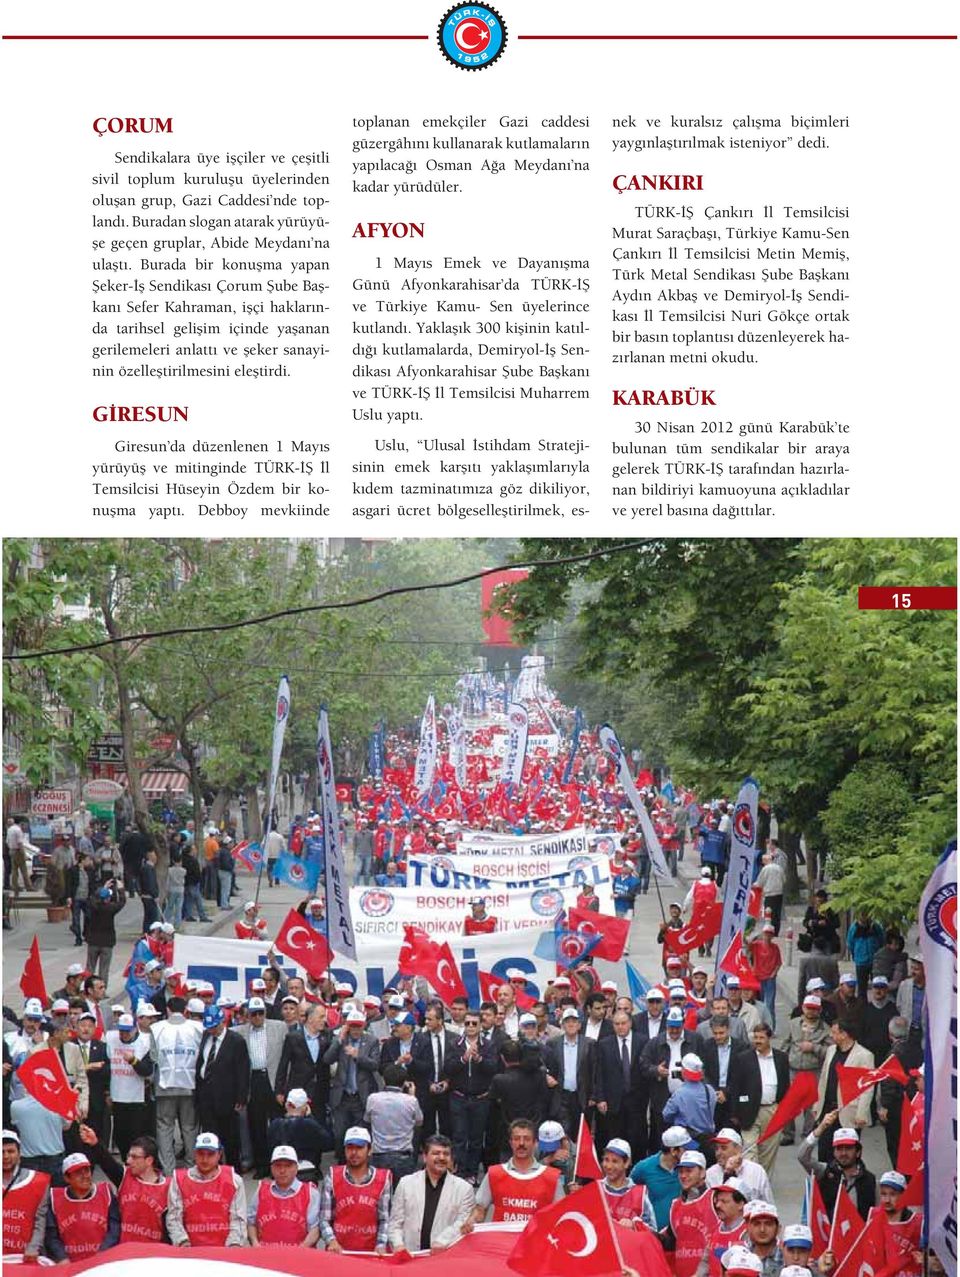 G RESUN Giresun da düzenlenen 1 May s yürüyü ve mitinginde TÜRK- l Temsilcisi Hüseyin Özdem bir konu ma yapt.